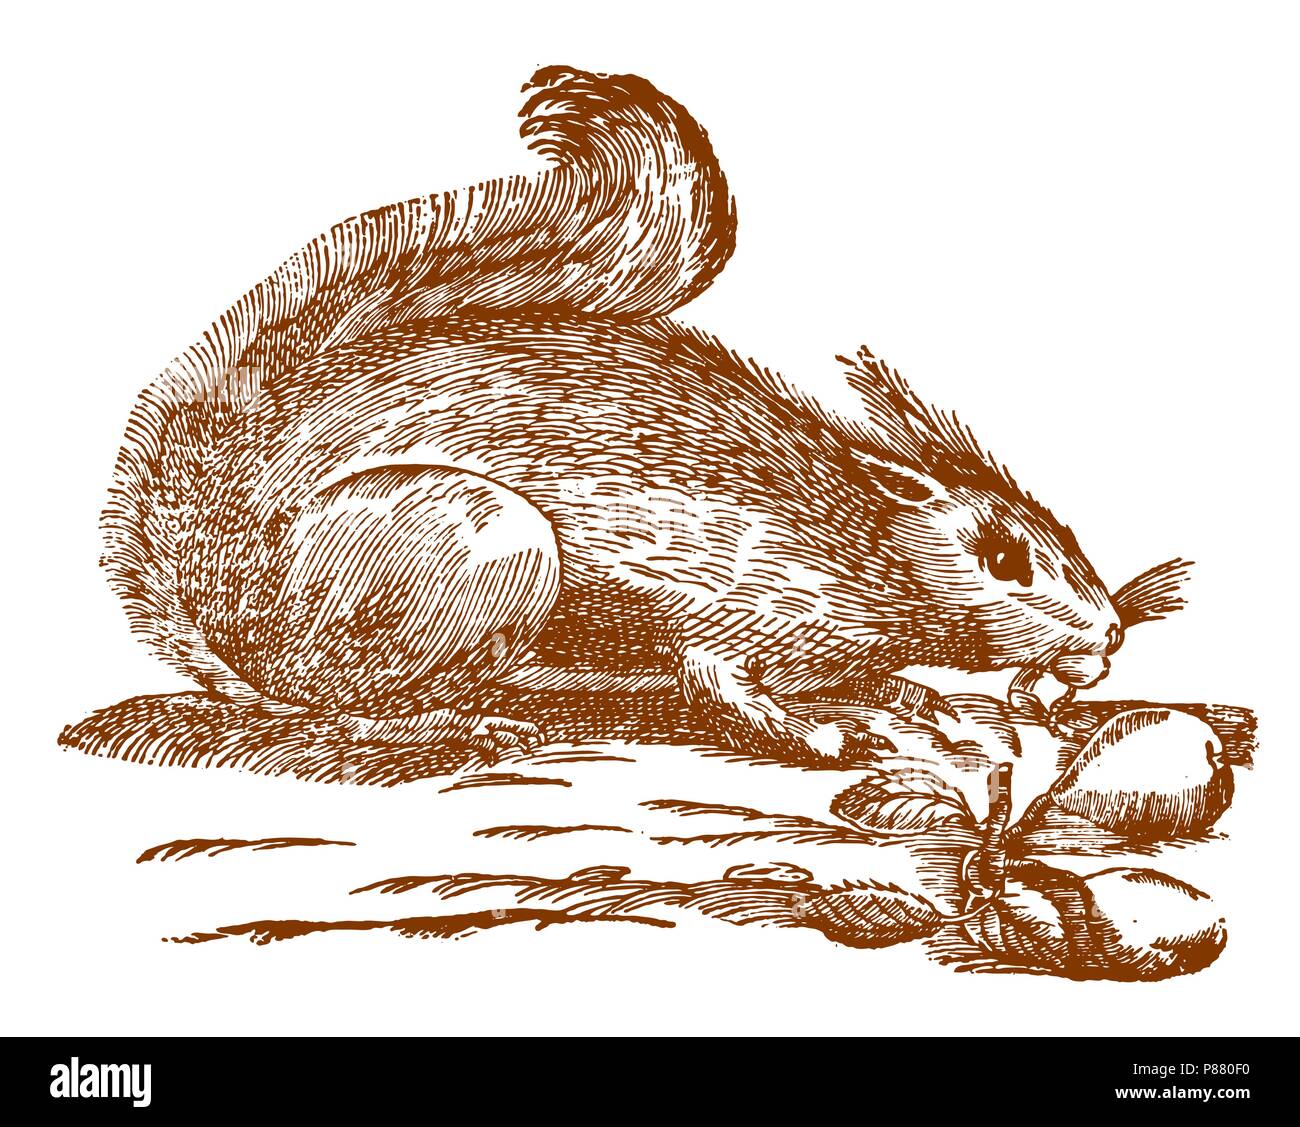 Le grignotage l'écureuil roux (Sciurus vulgaris). Illustration après une gravure sur bois historique du 17e siècle Illustration de Vecteur